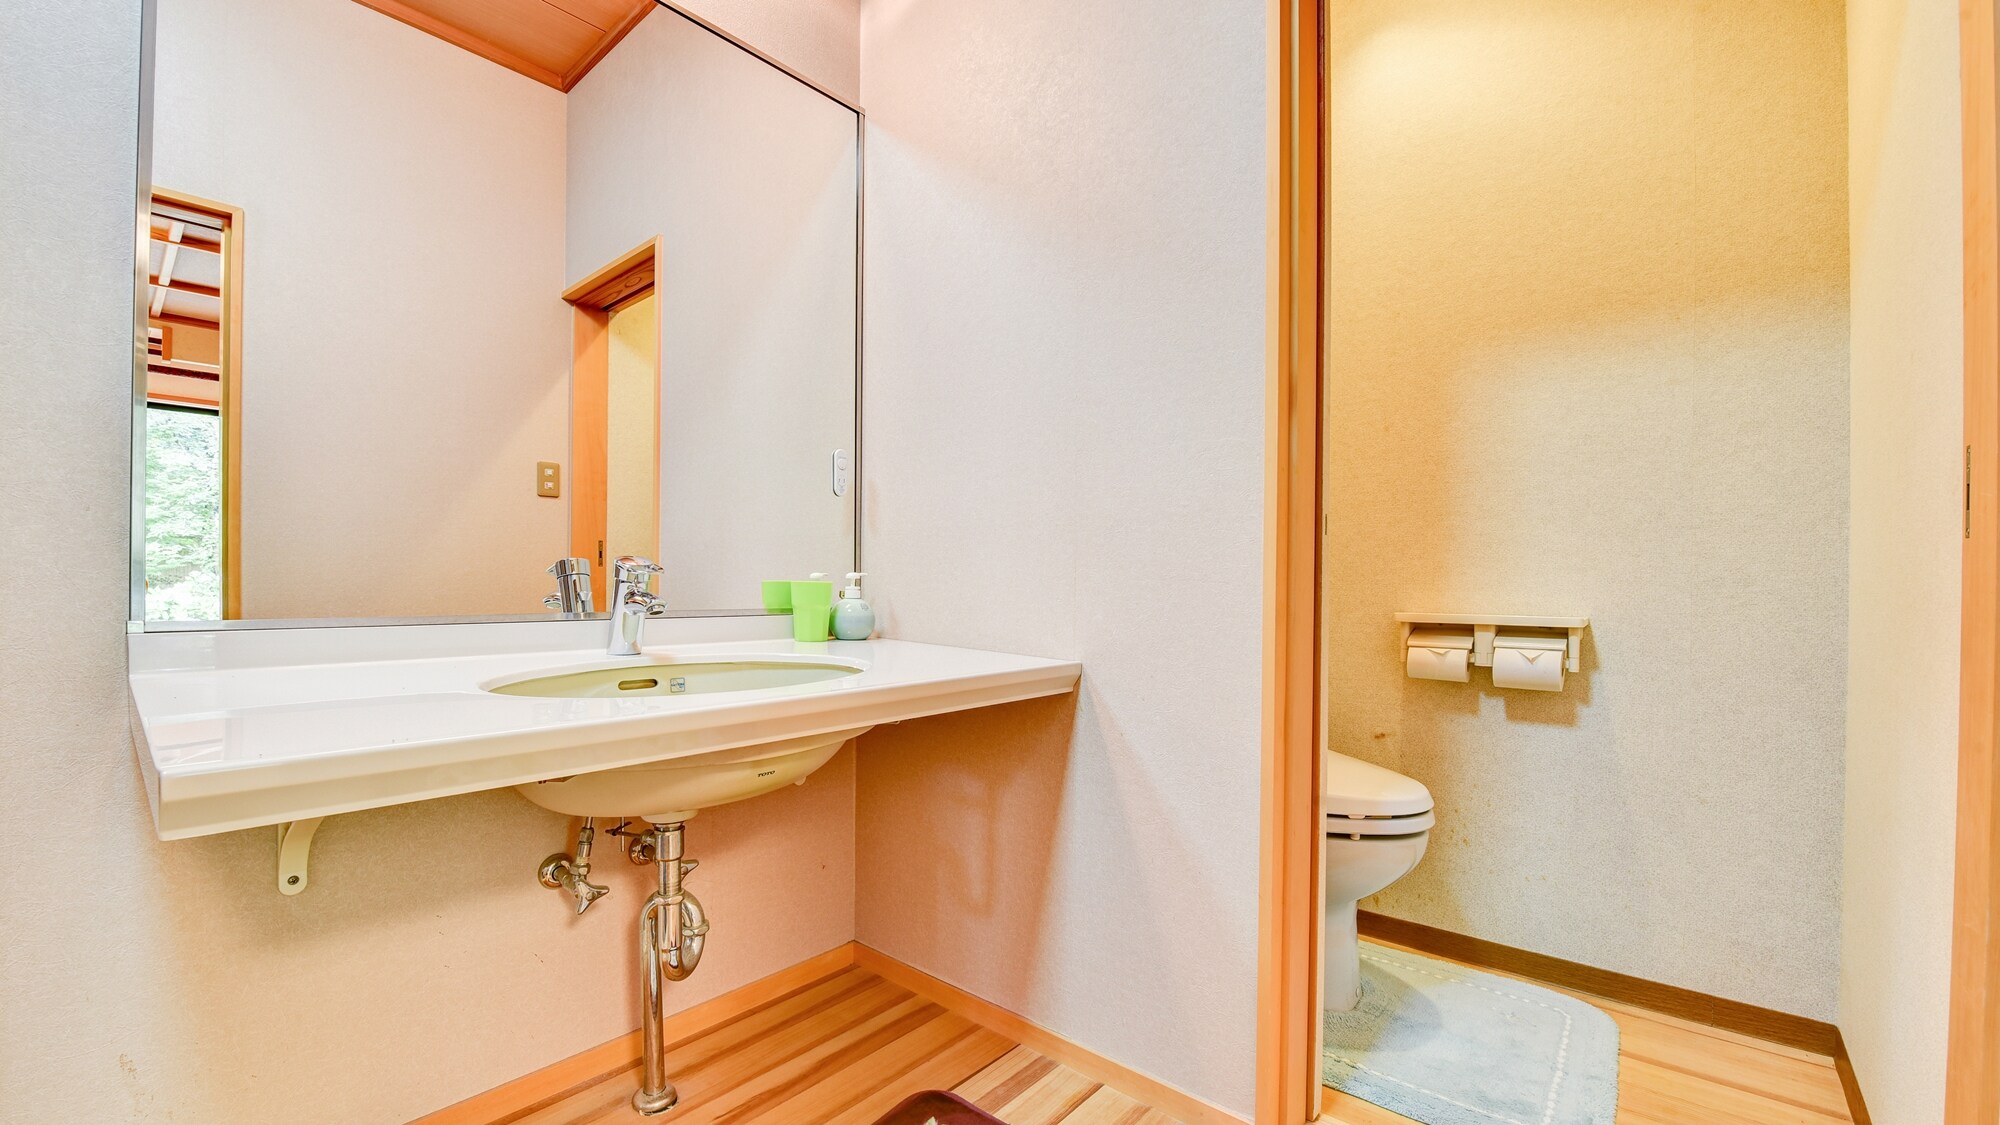 * ■ 日式房间 10 张榻榻米（示例） ■ 带洗脸盆和马桶的房间